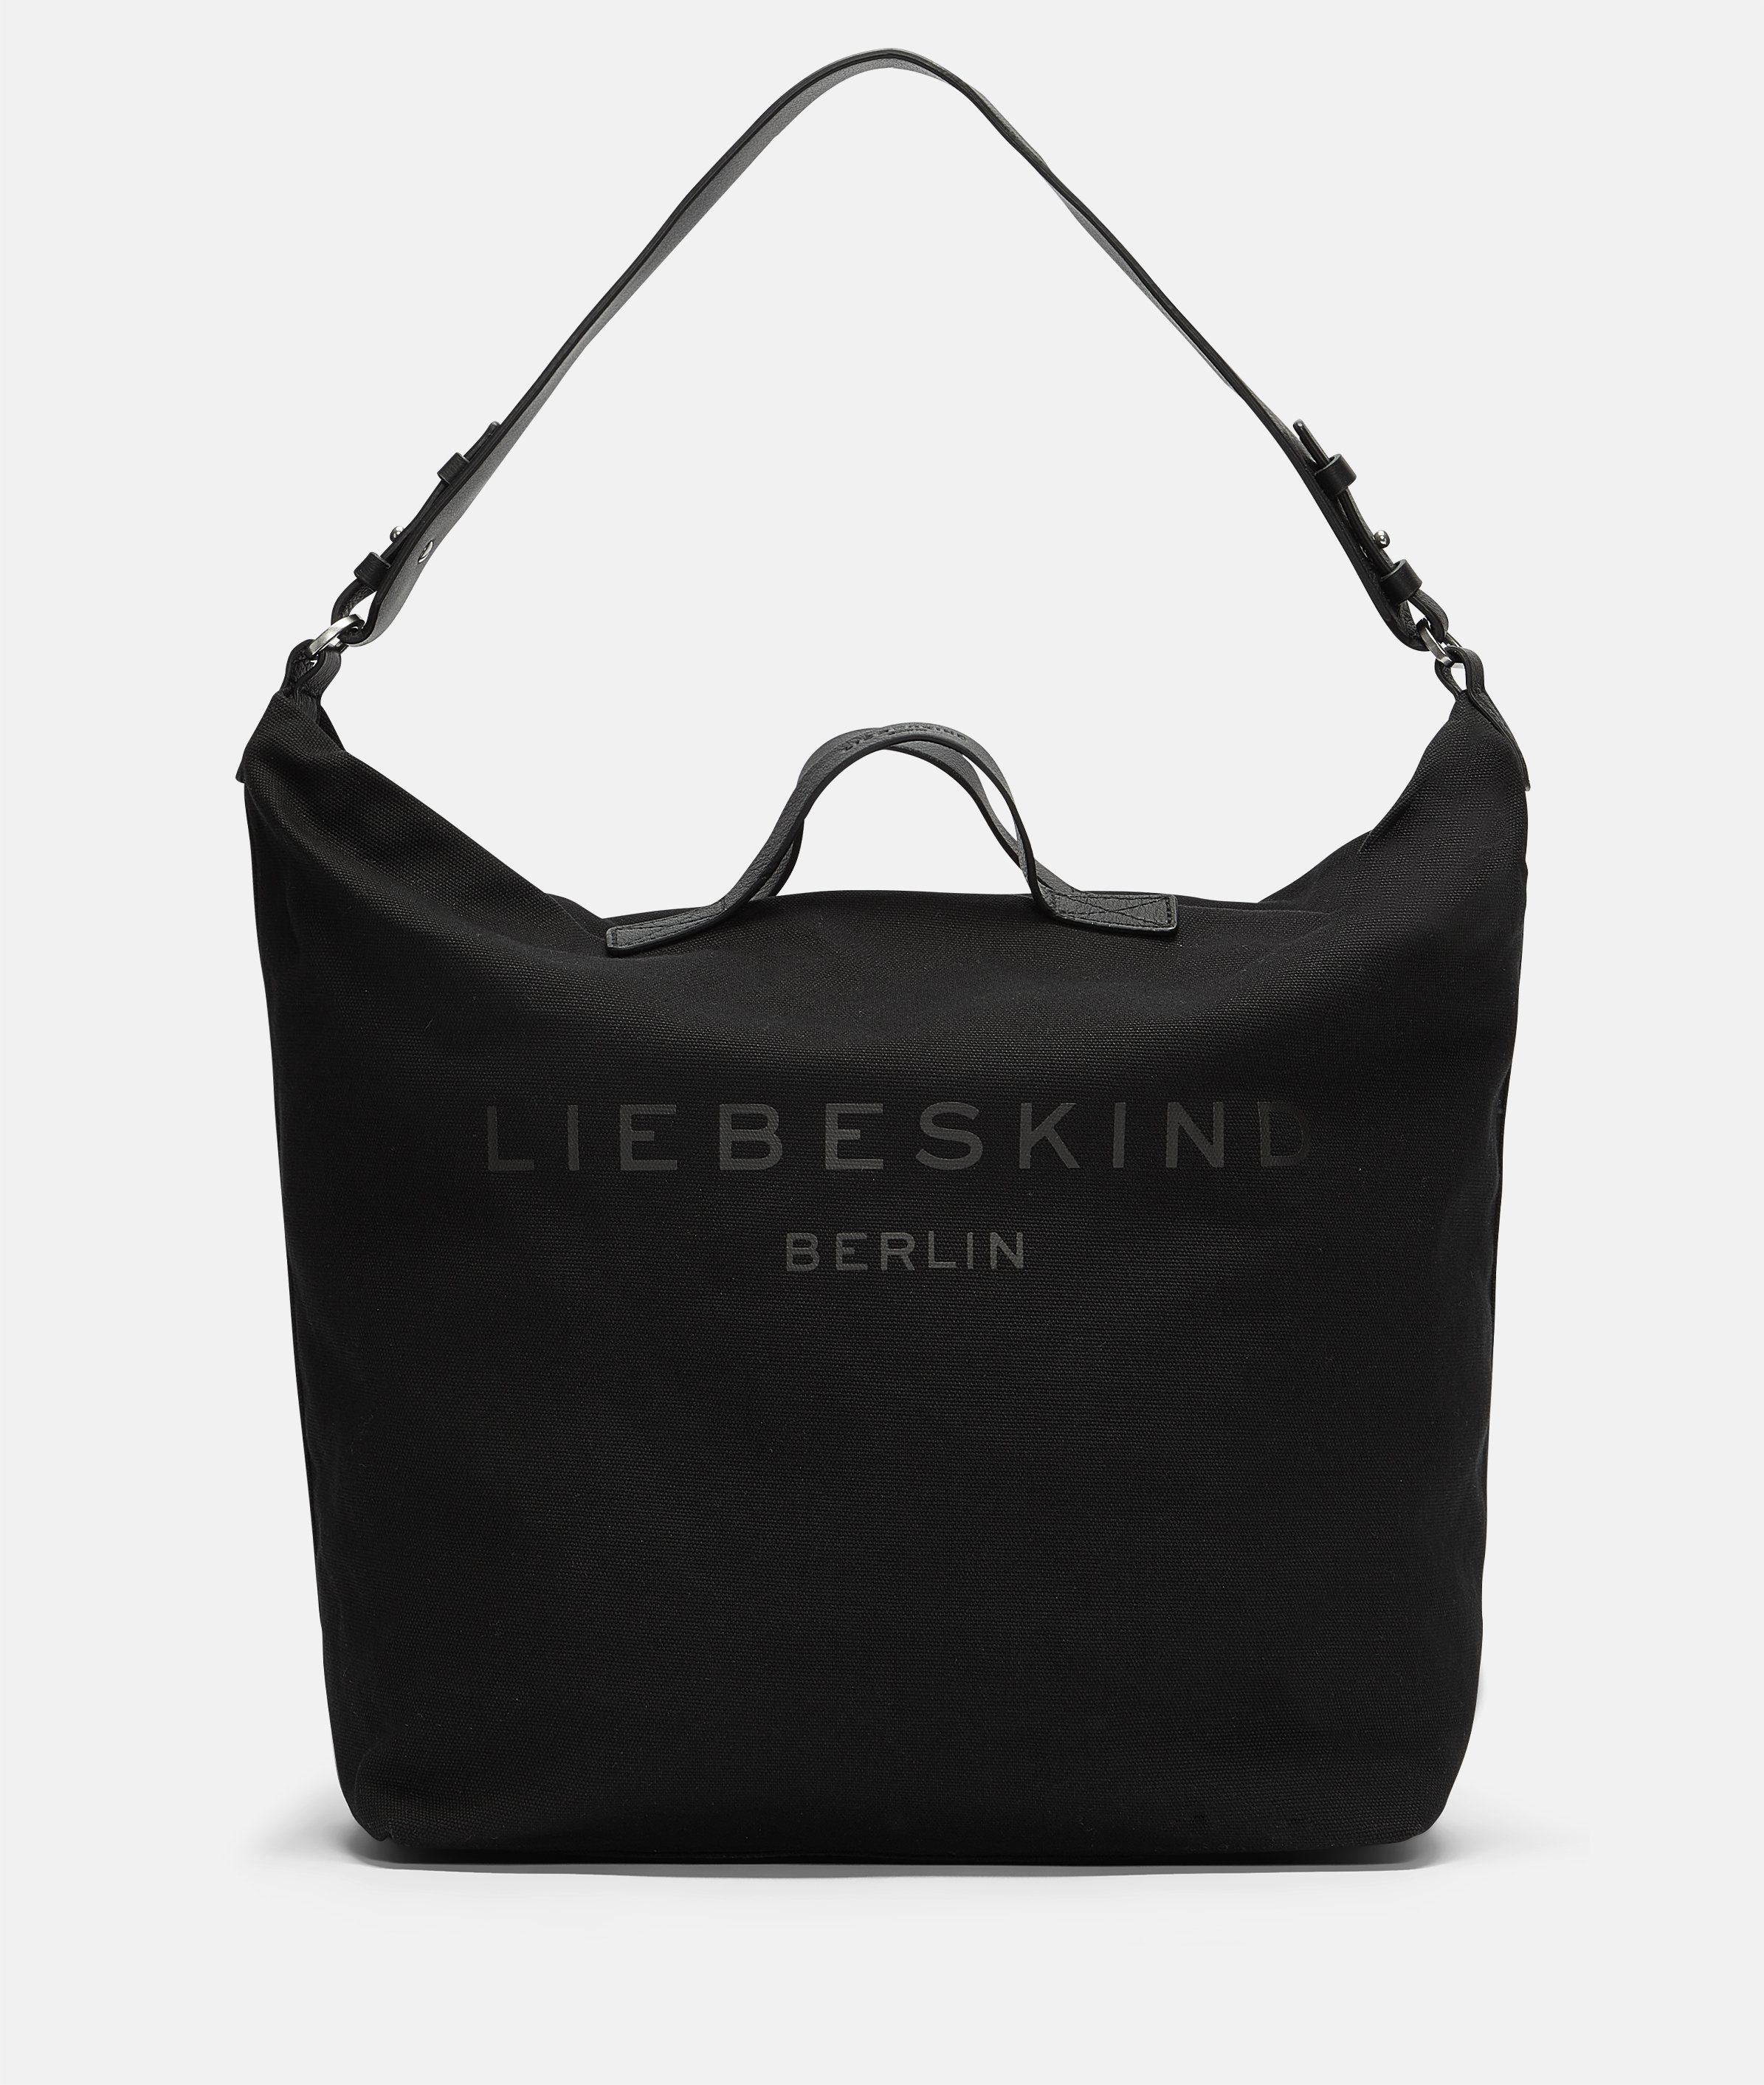 Liebeskind Berlin Damen Handtaschen online kaufen | OTTO